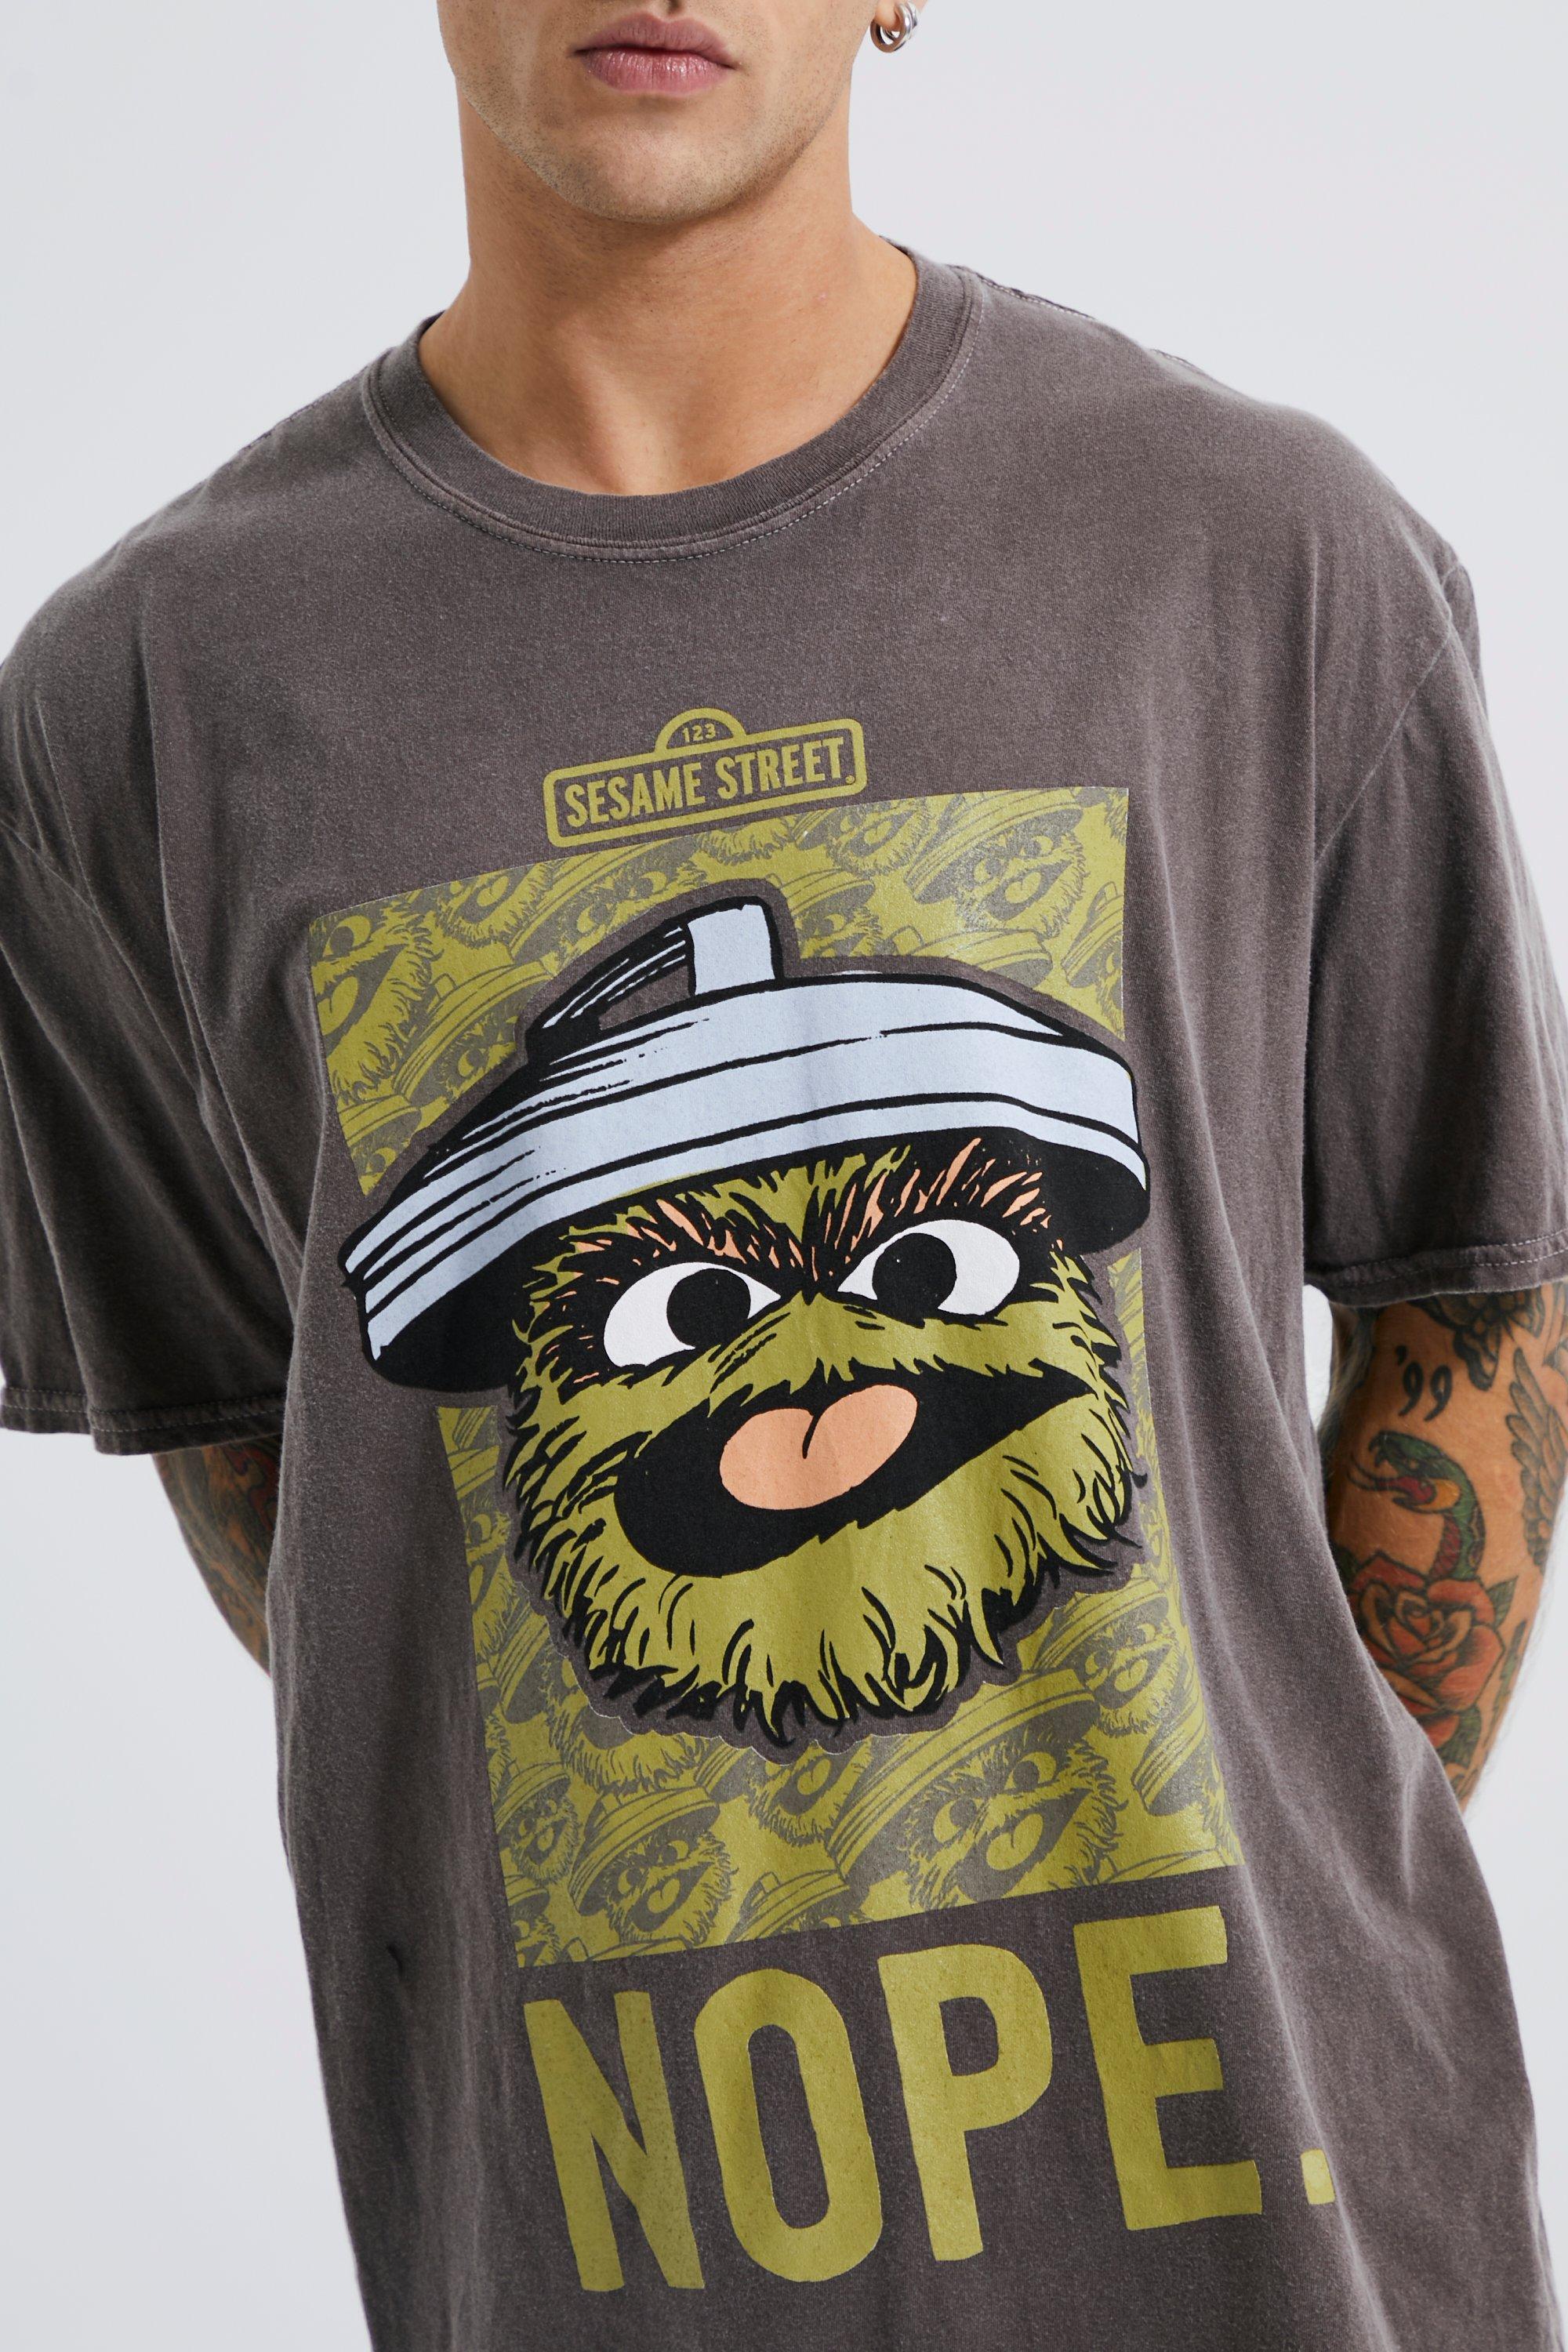 Donder overhemd ondergronds Oversized Gelicenseerd Sesamstraat T-Shirt | boohoo